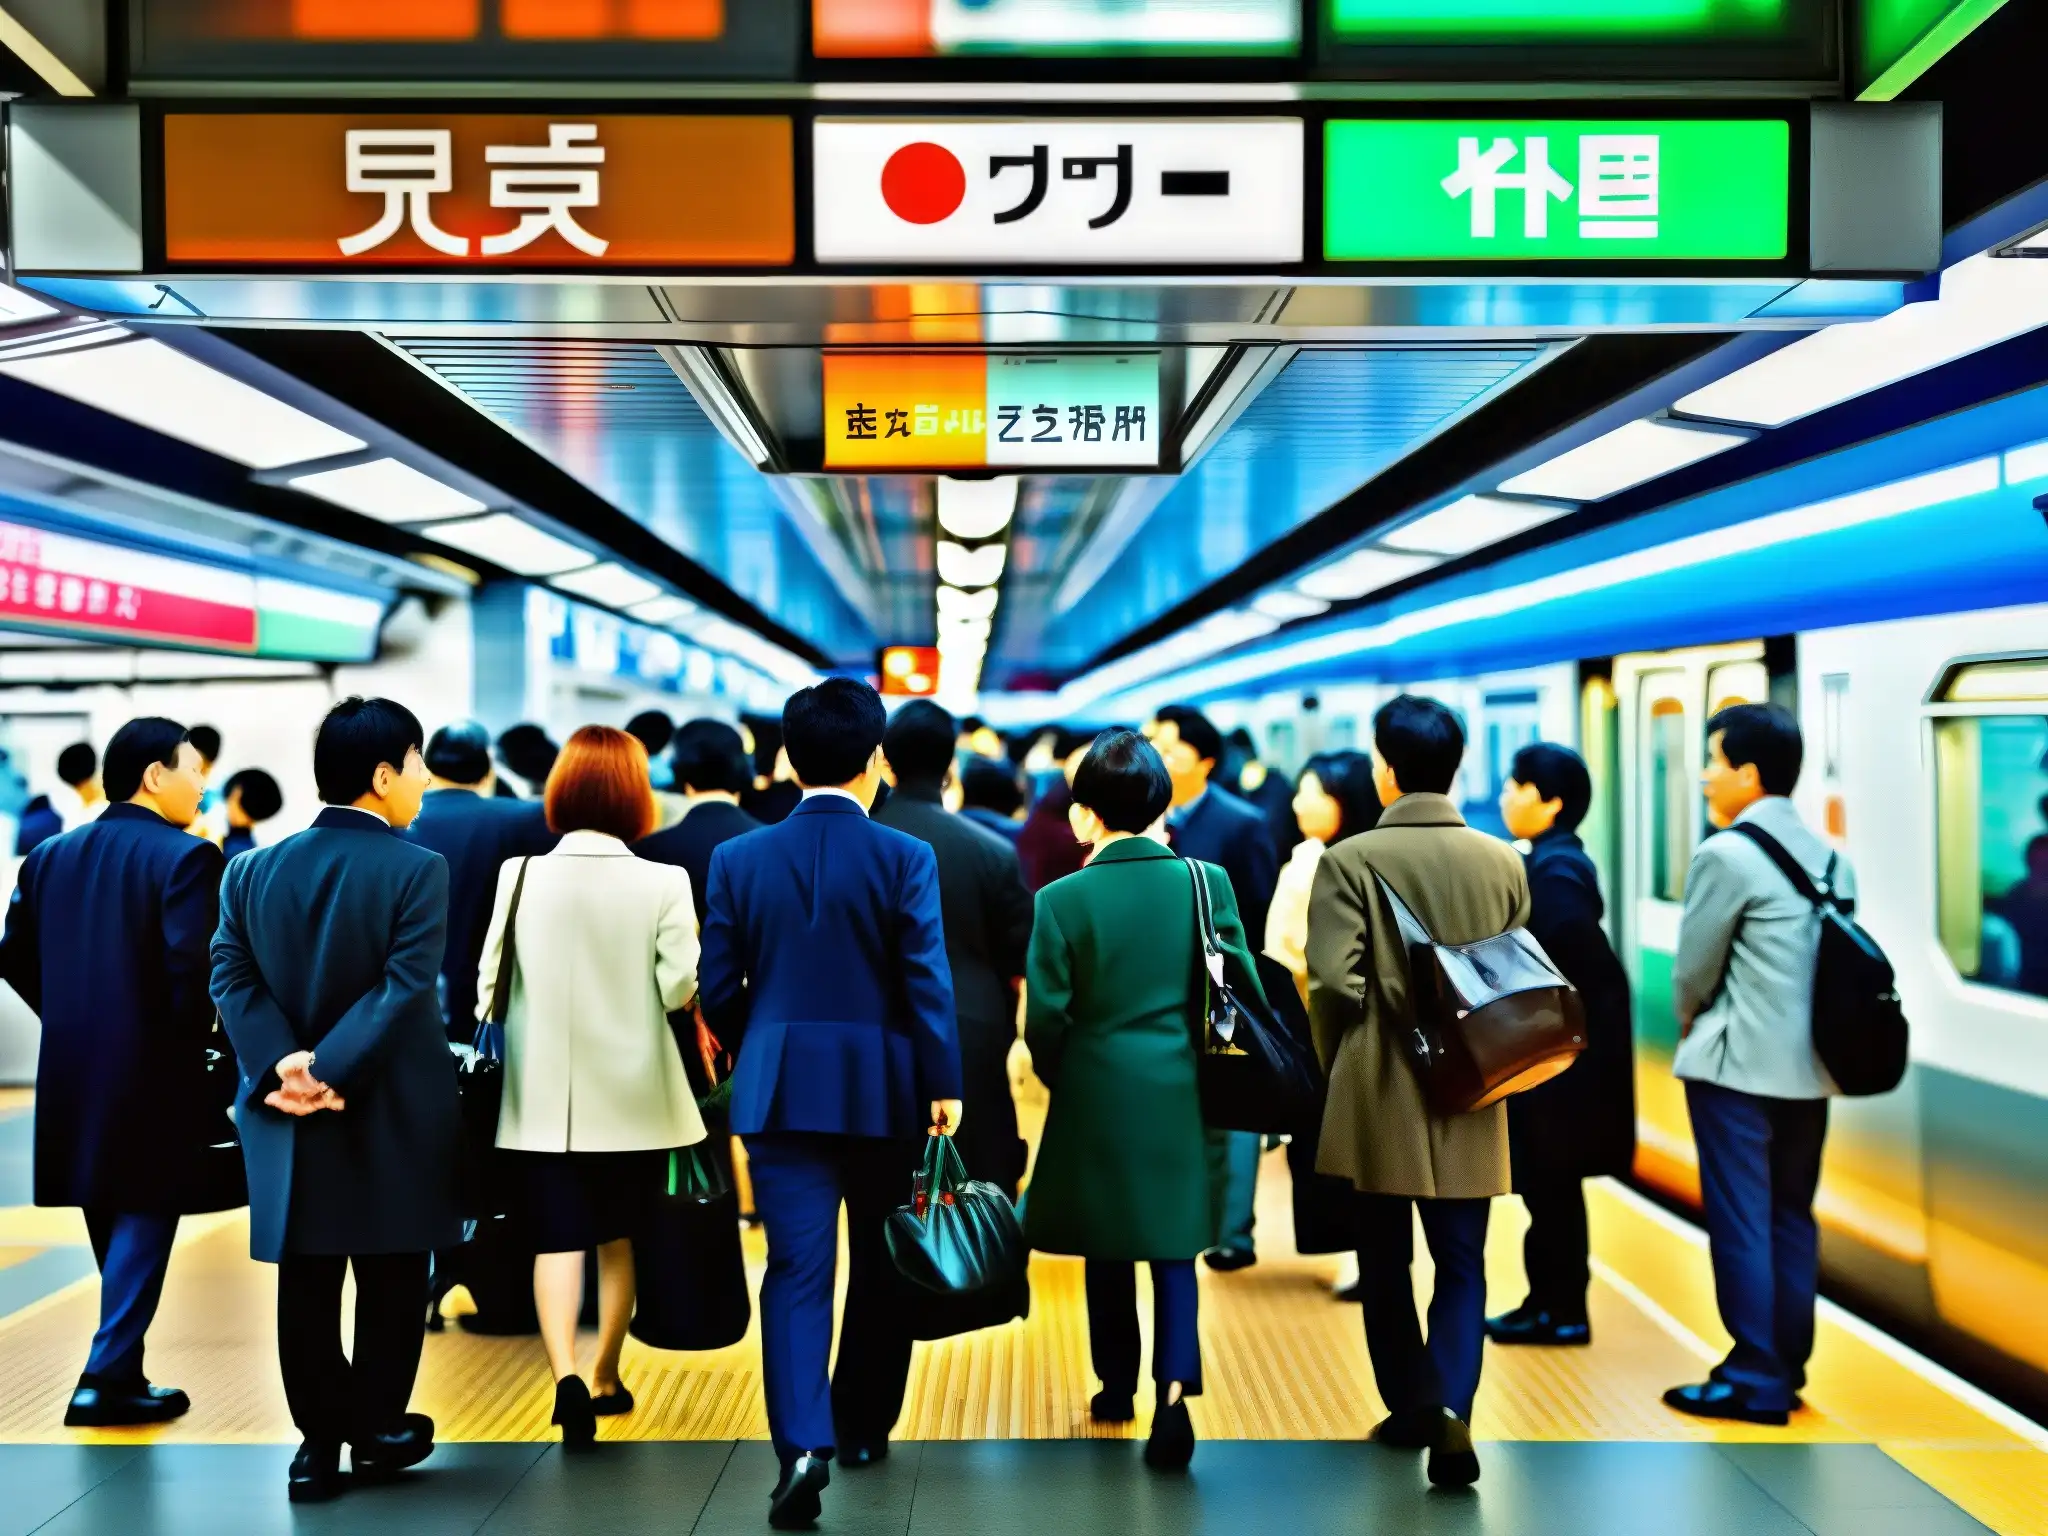 Escena bulliciosa del metro de Tokio en hora pico, con personal uniformado, carteles en japonés e inglés, y arquitectura distintiva